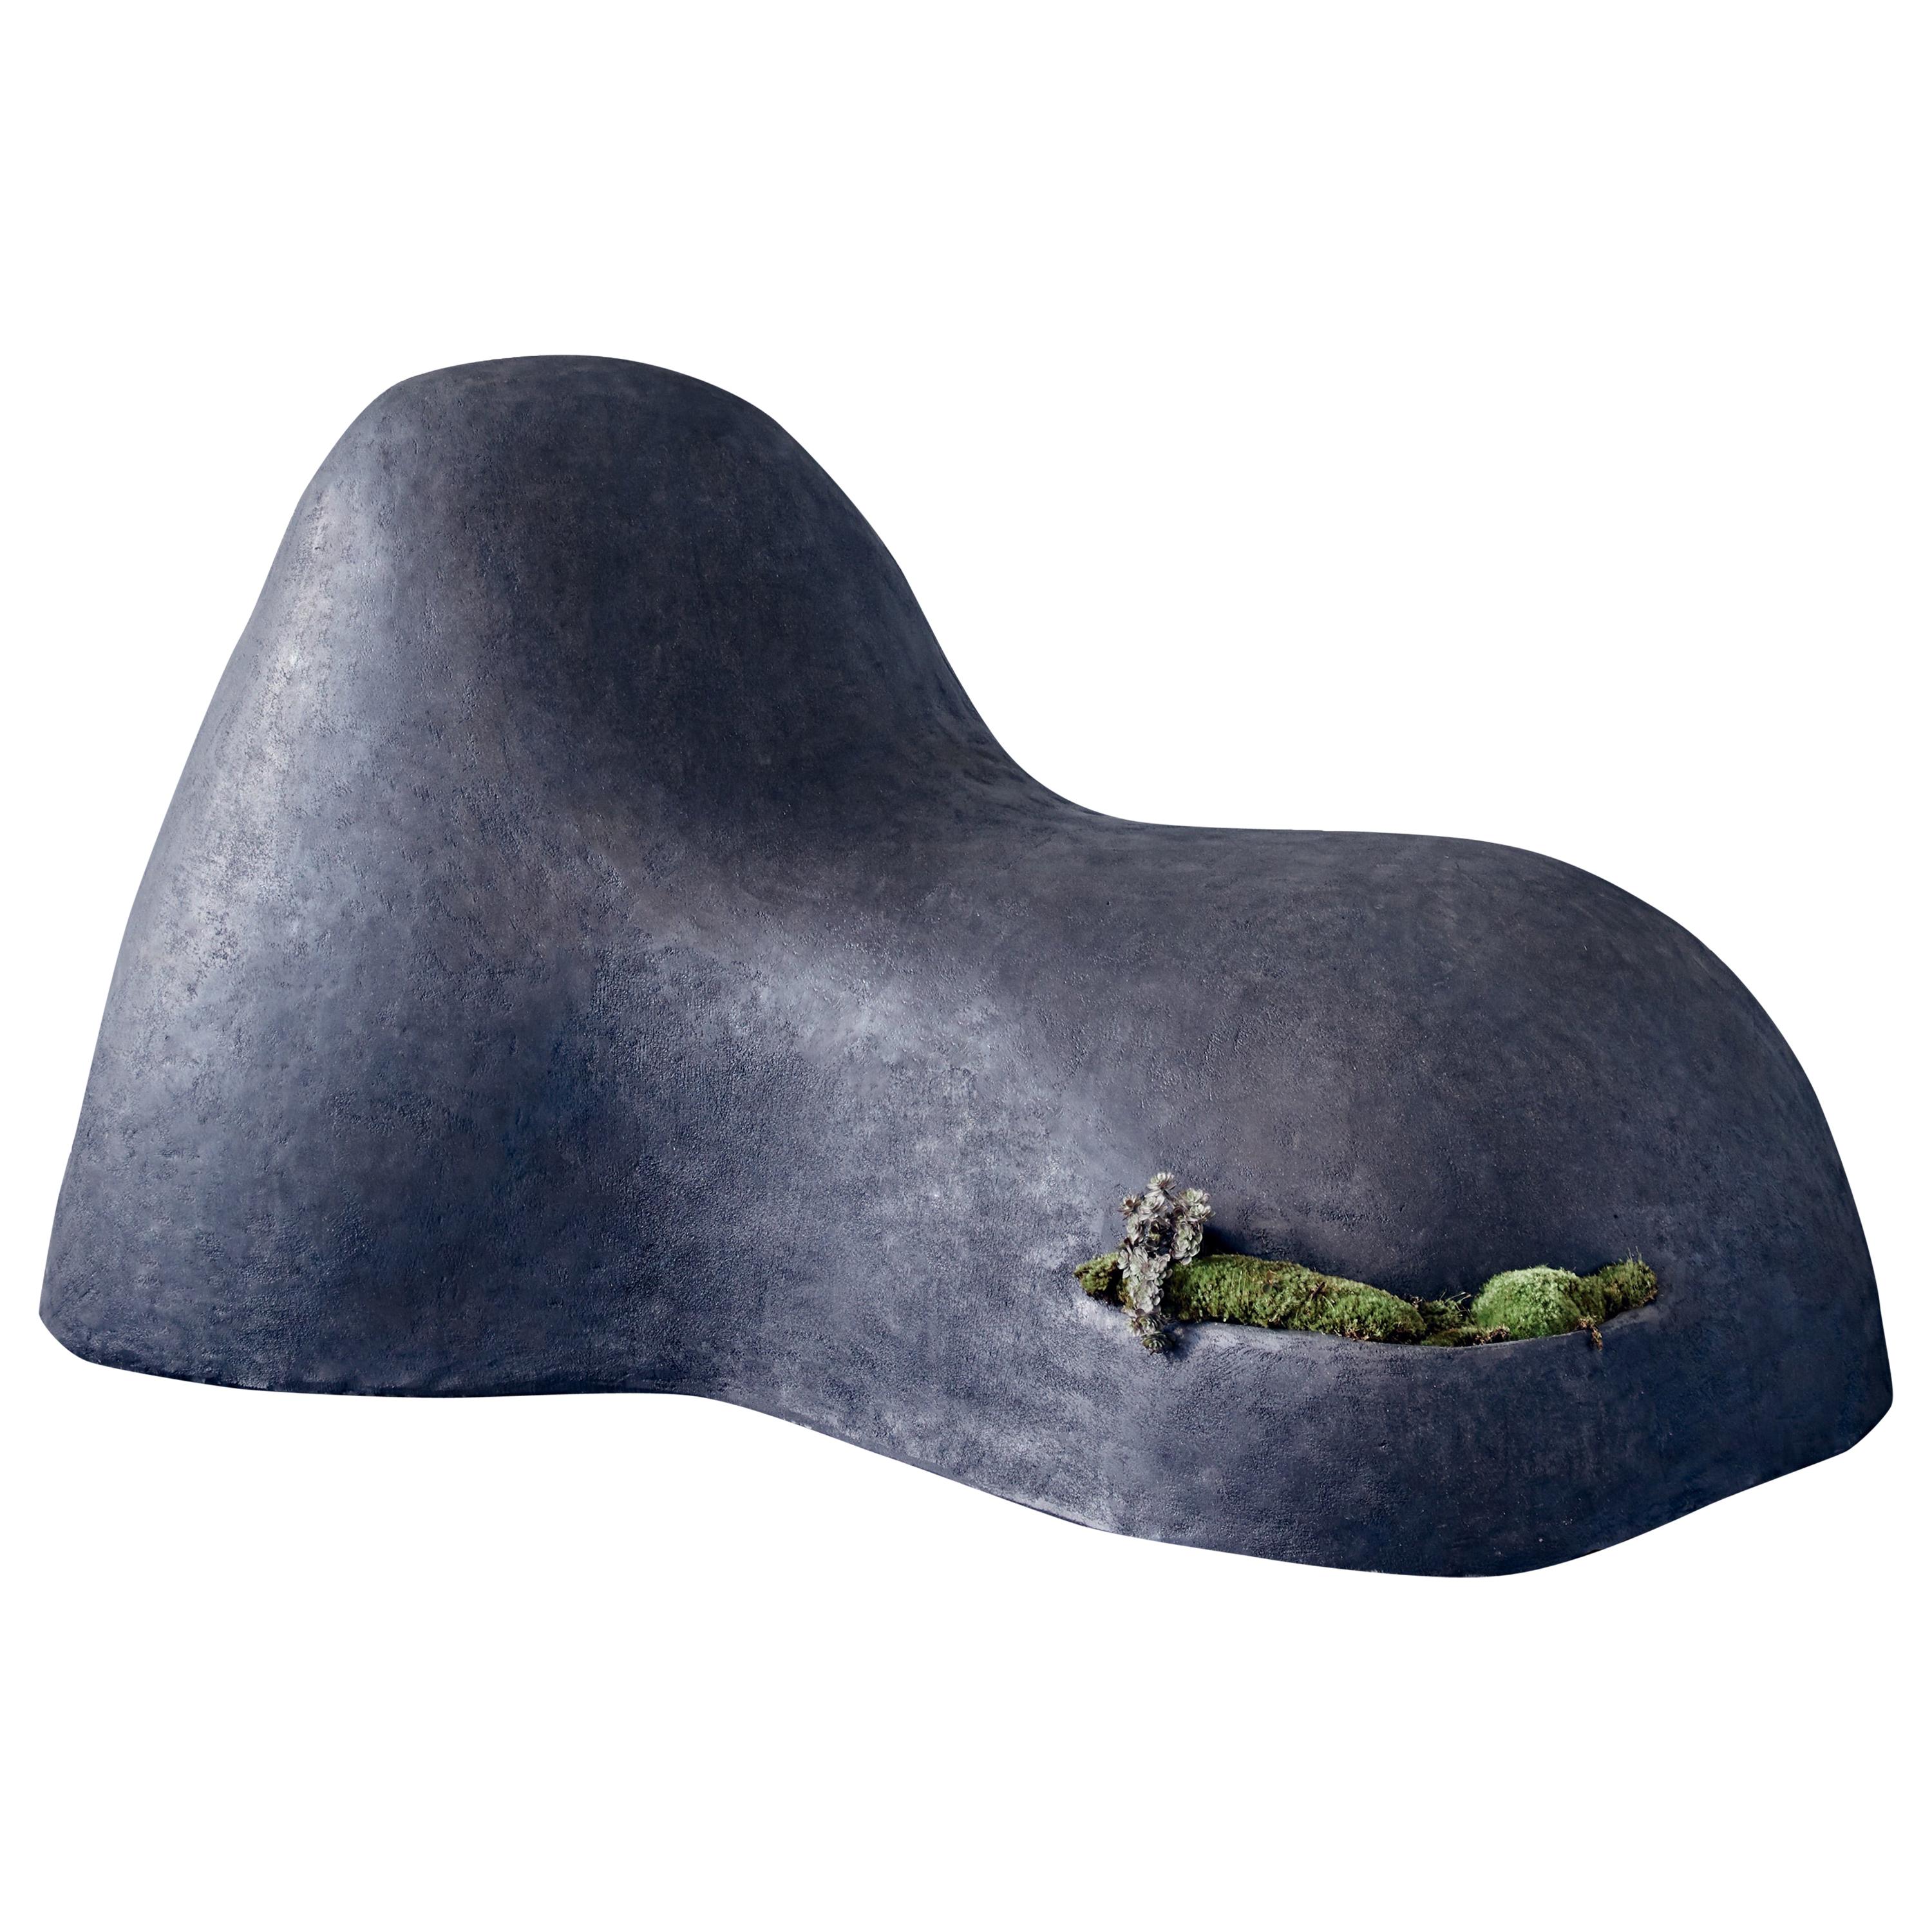 OPIARY 'Soy Una Roca' Sculptural Concrete Seat 